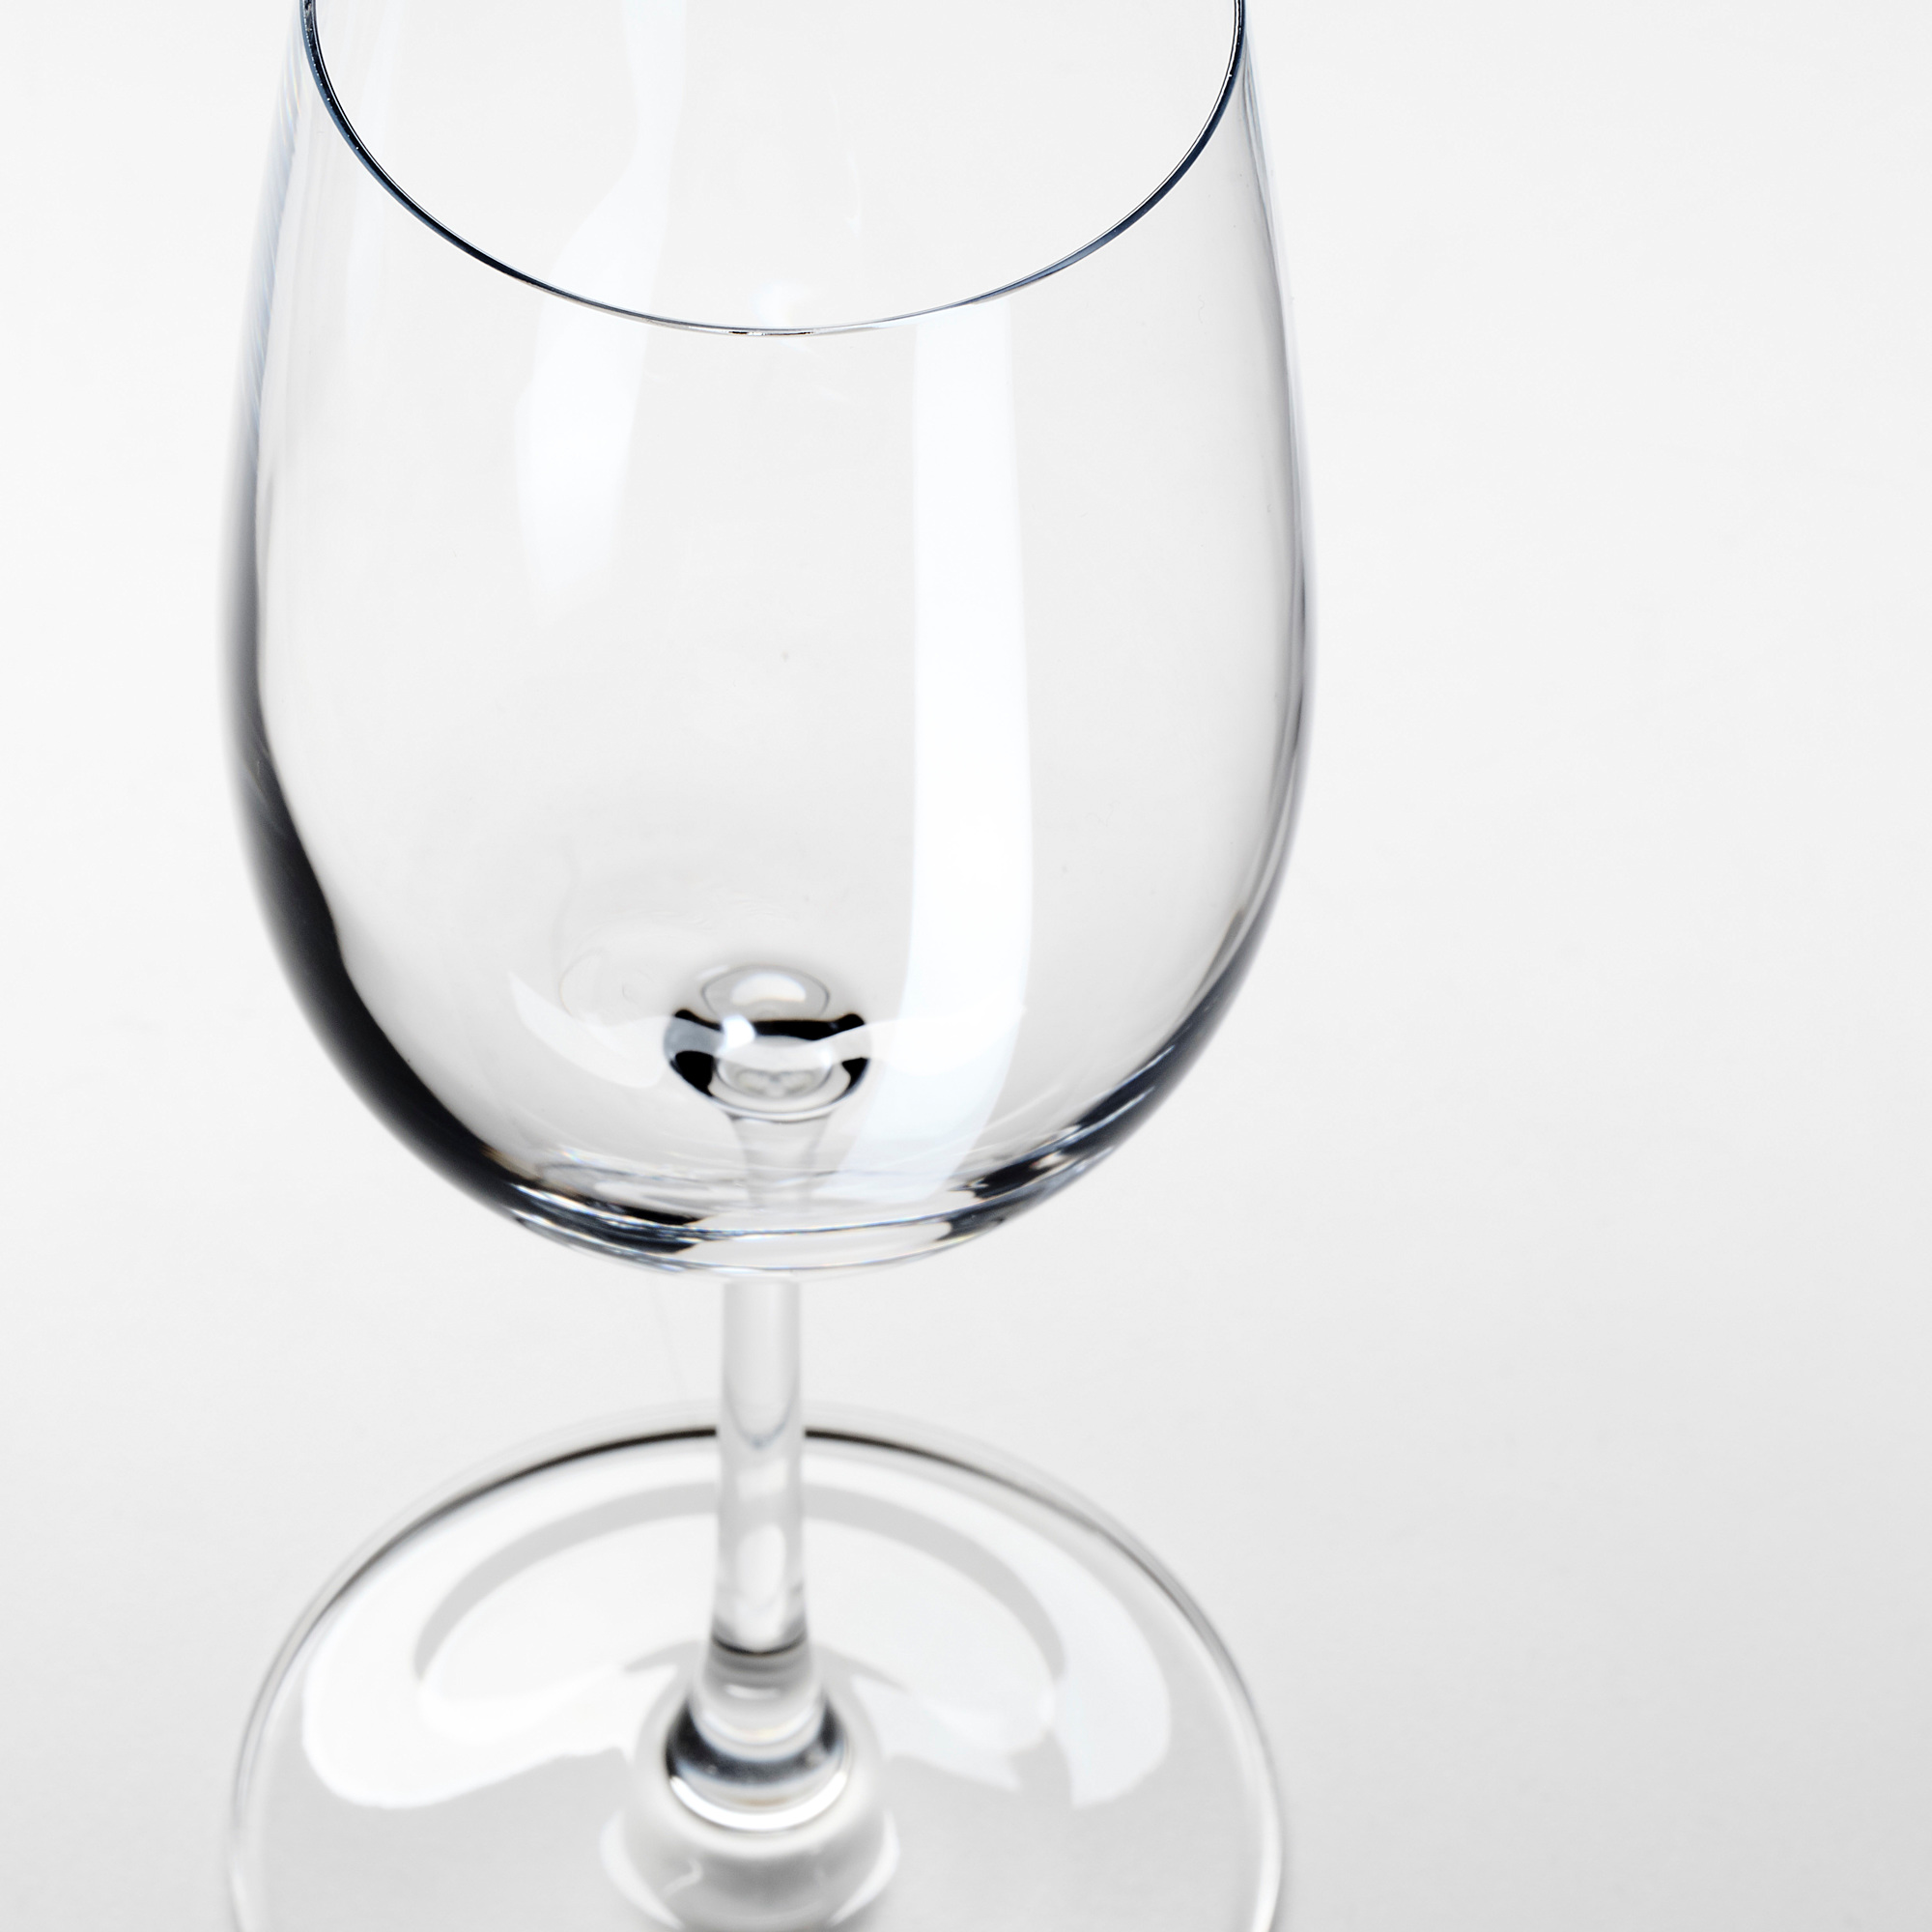 STORSINT white wine glass